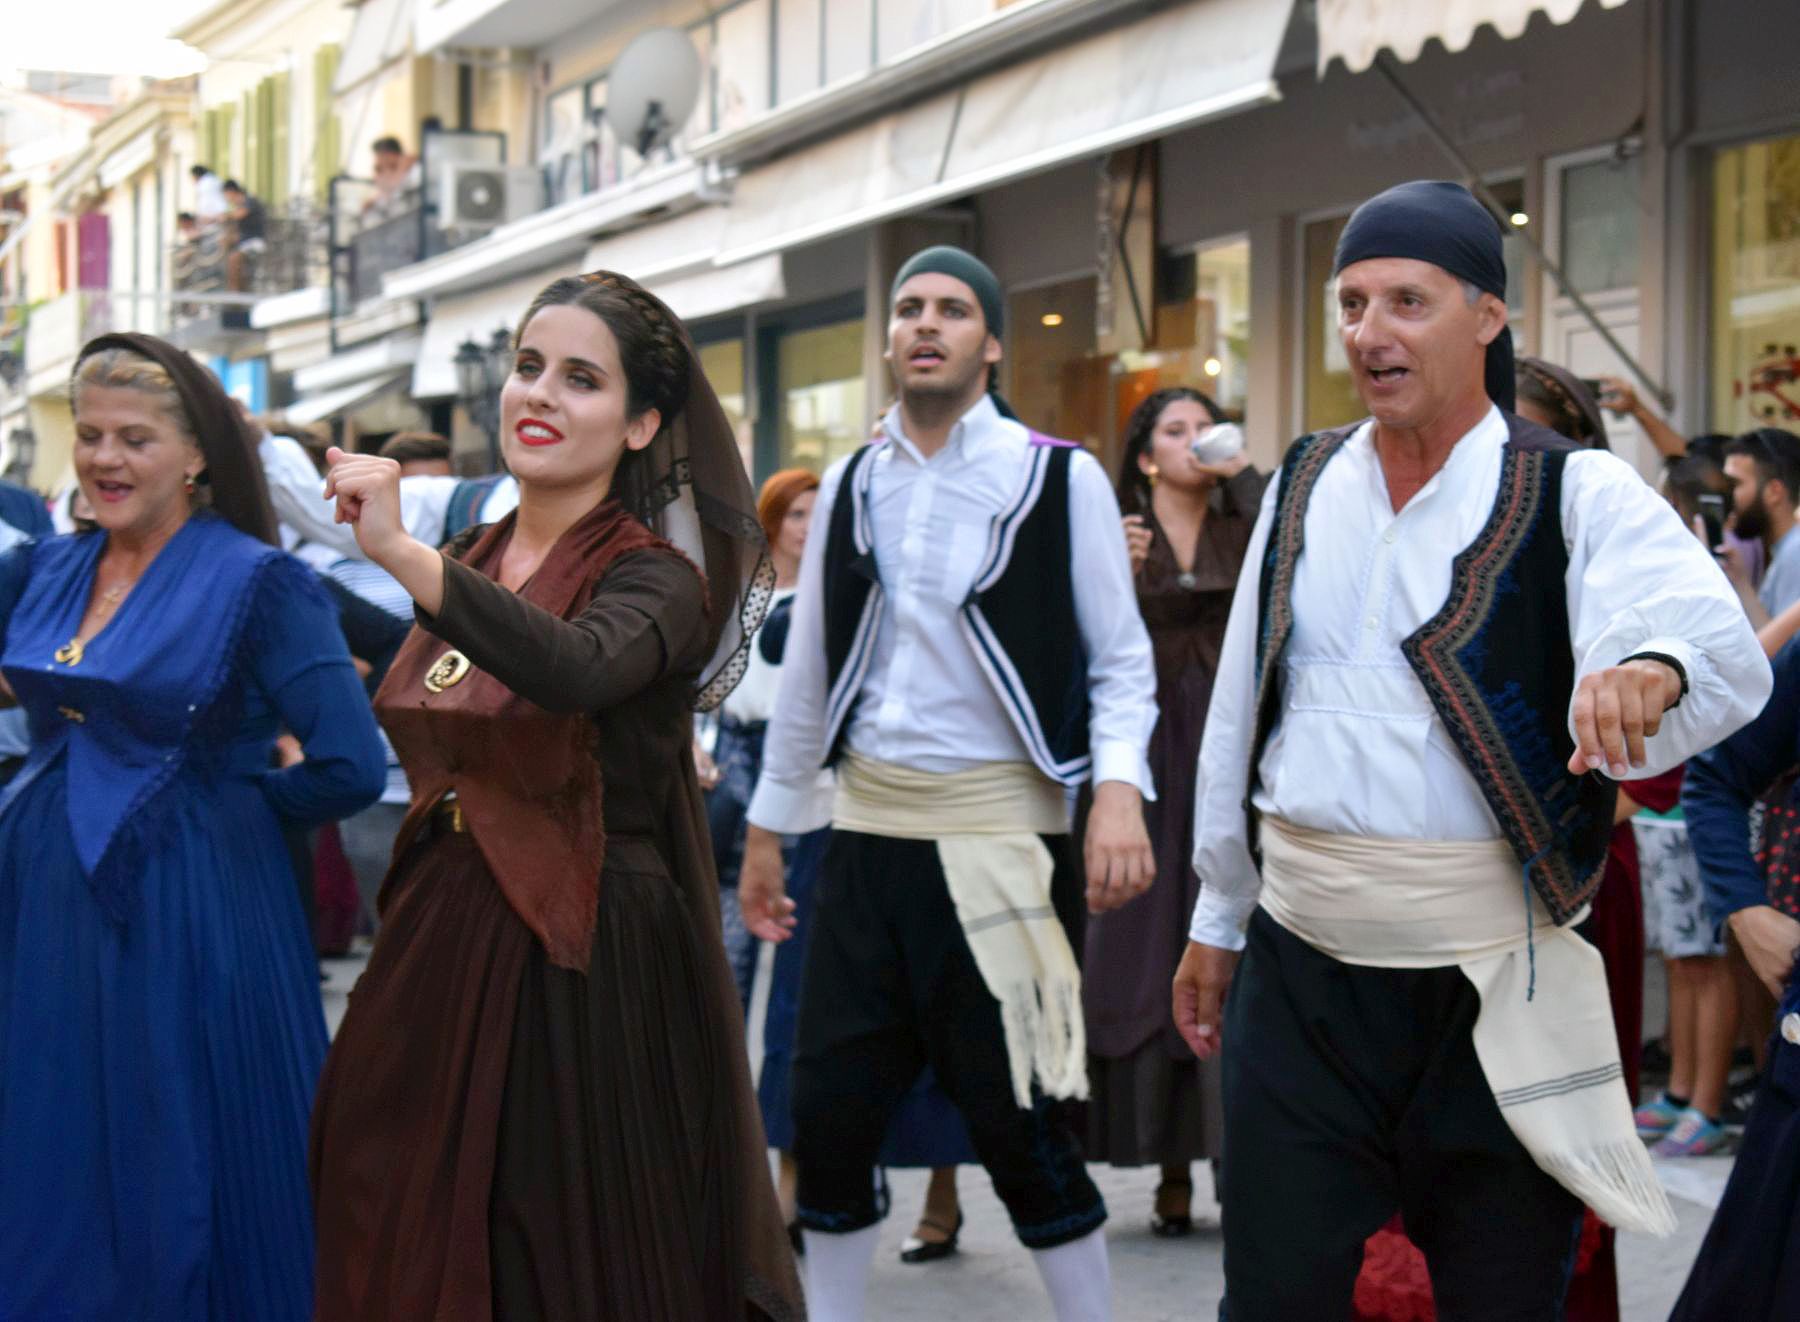 Χορευτές με την παραδοσιακή στολή της Λευκάδας | Ιόνια νησιά